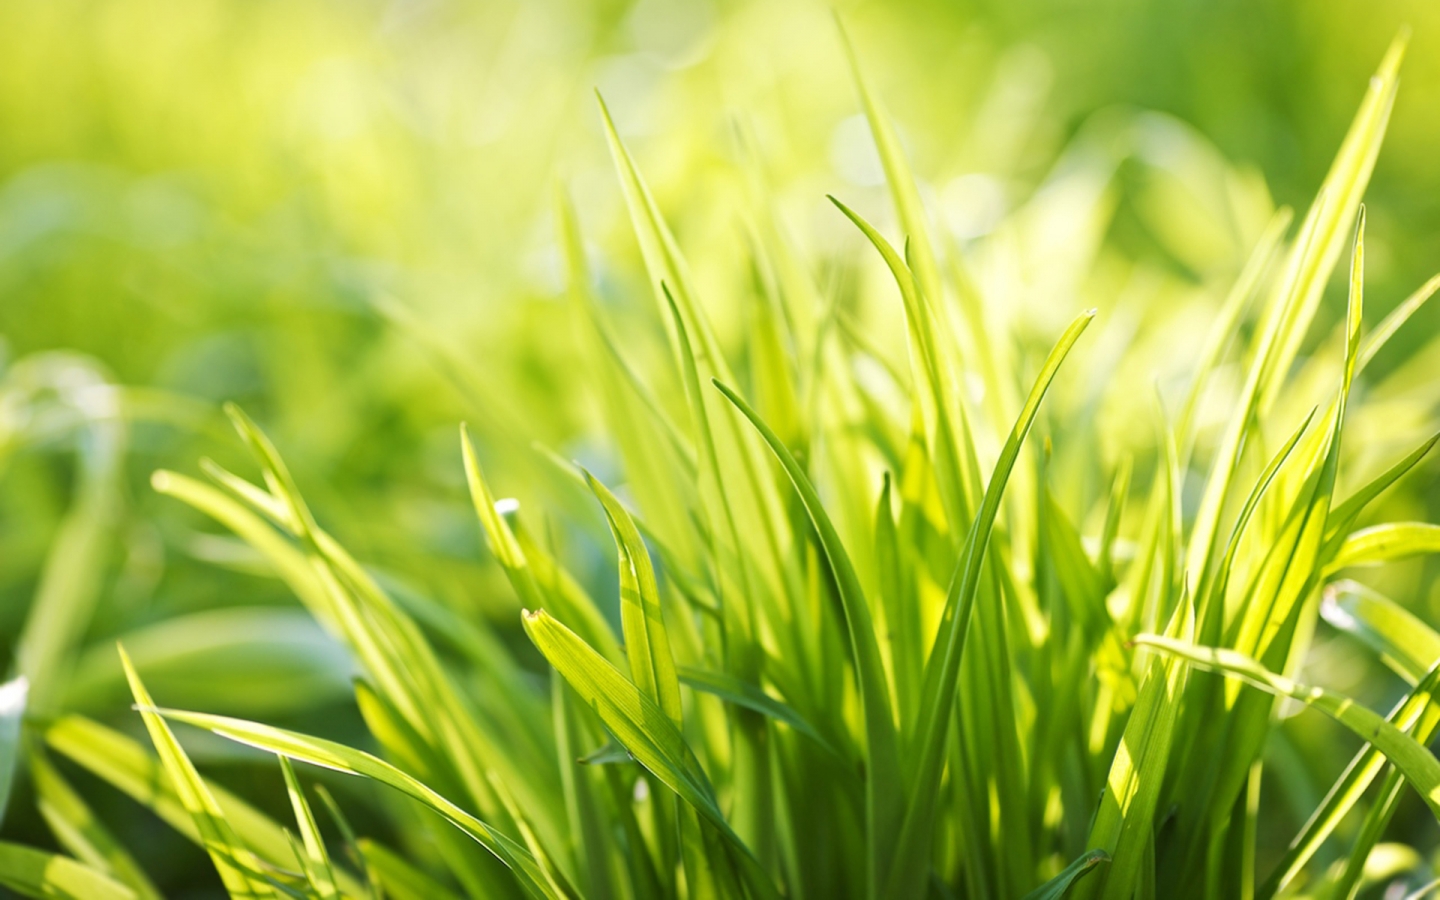 Ever Green Grass for 1440 x 900 widescreen resolution